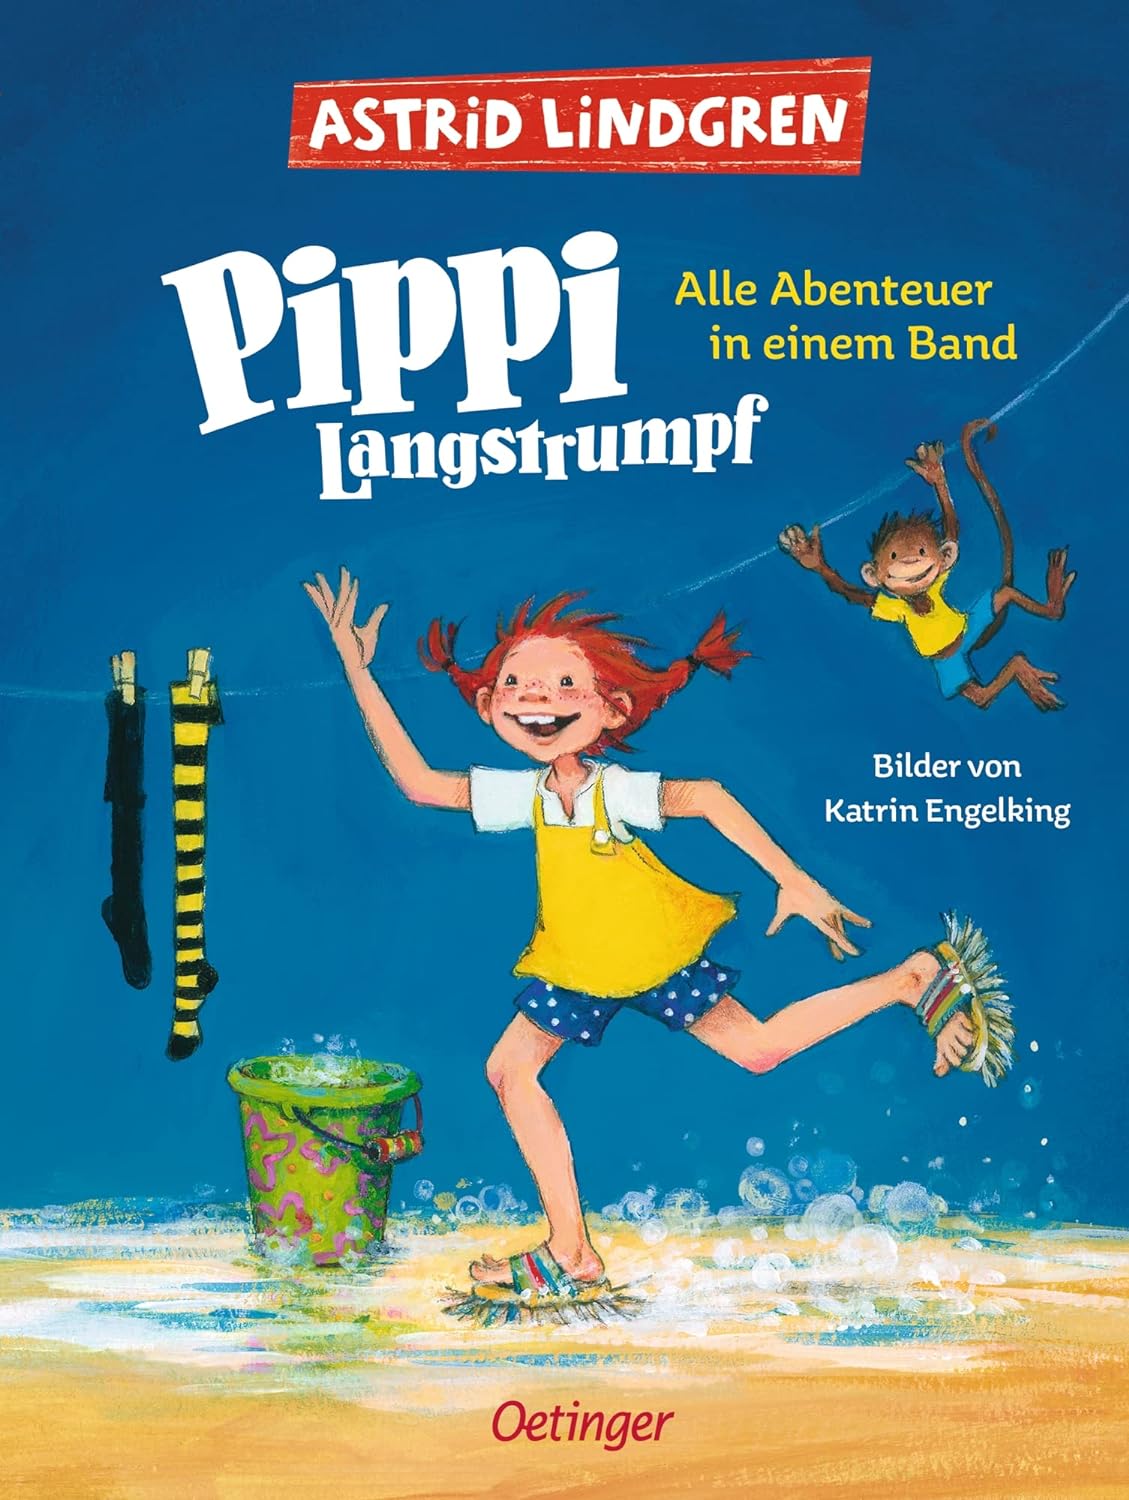 Buchcover von 'Pippi Langstrumpf' von Astrid Lindgren, ein inspirierendes Kinderbuch zum Vorlesen, zeigt Pippi mit ihren charakteristischen roten Zöpfen und Sommersprossen, wie sie ihre beiden Freunde Tommy und Annika an den Händen hält.